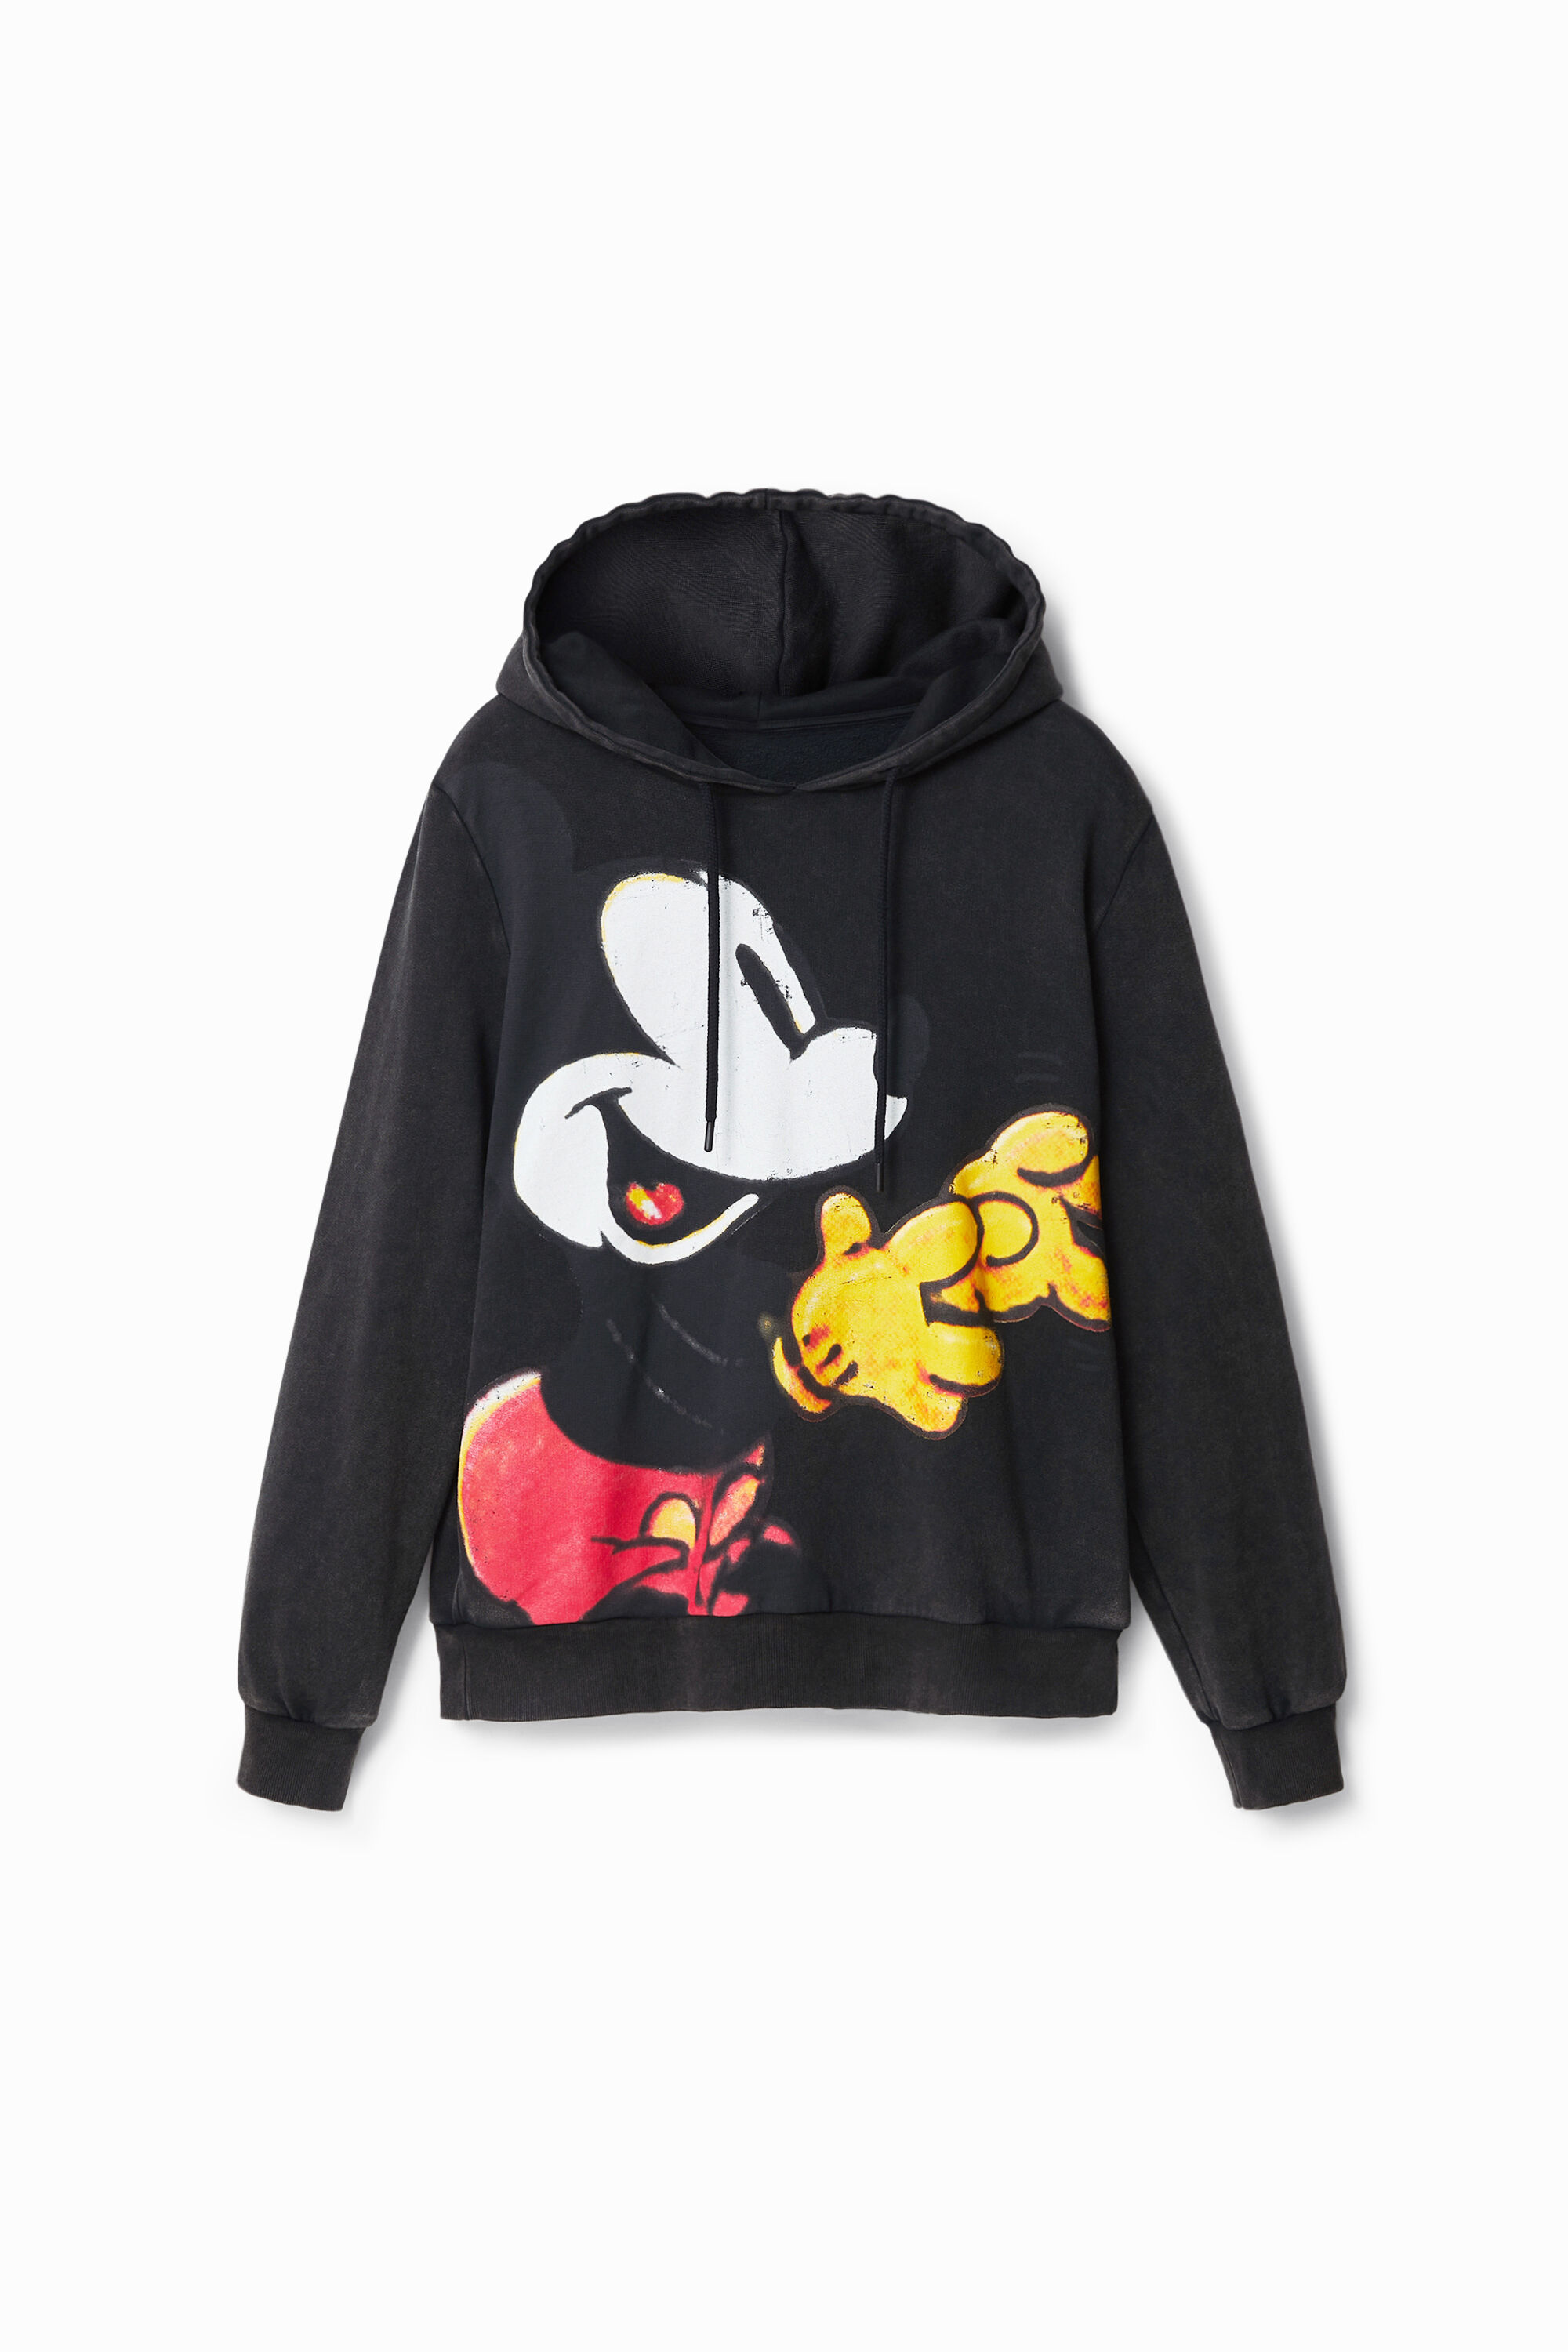 Desigual Women Clothing Sweaters Hoodies Disneys Mickey Mouse print hoodie 